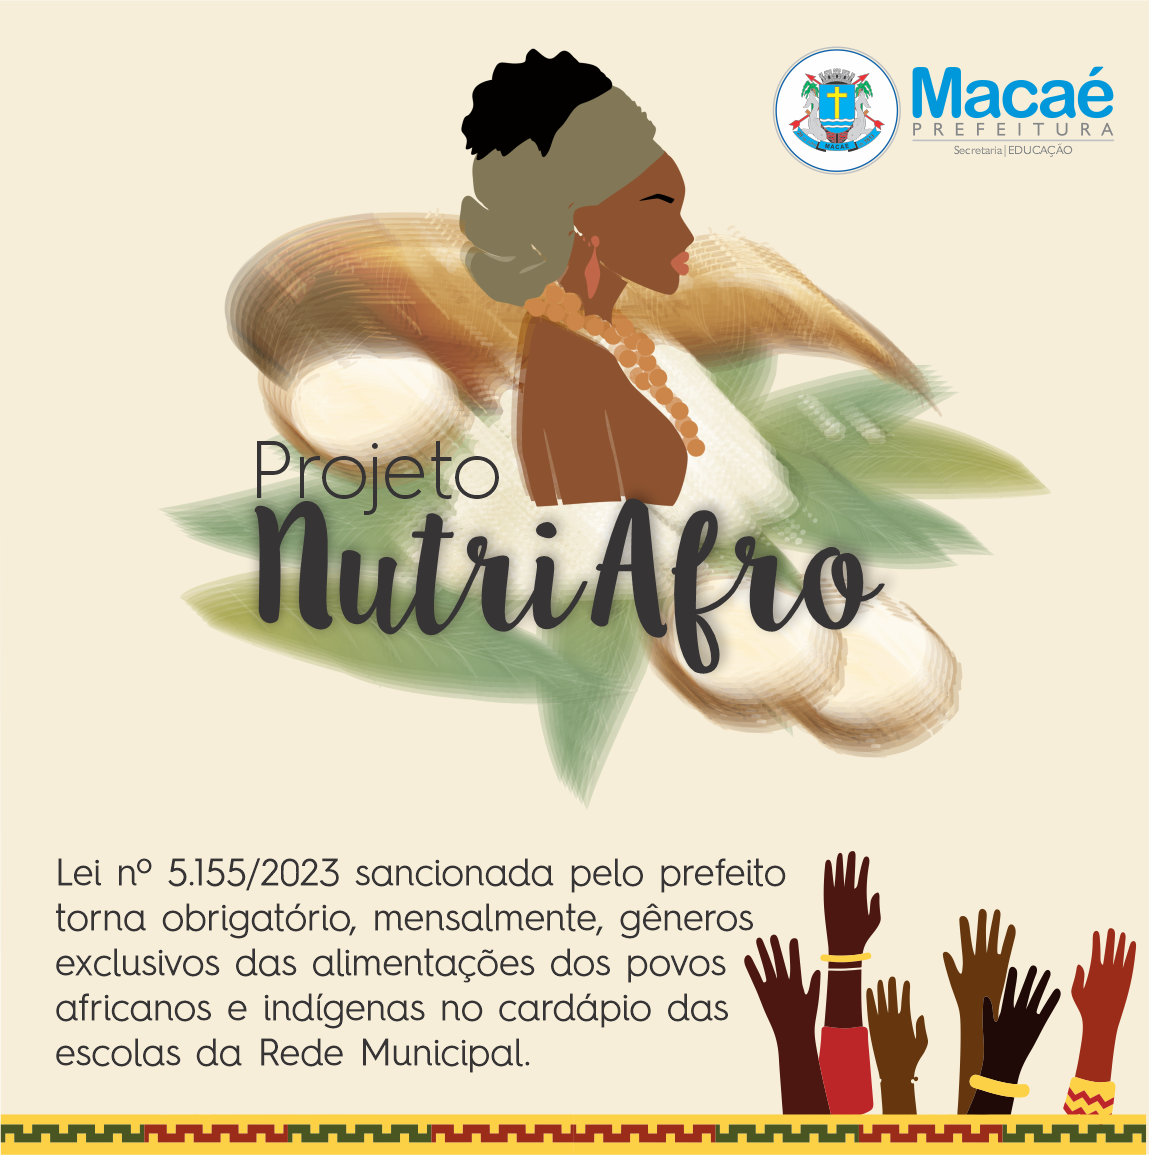 Instituído na Lei nº 5.155/2023, o projeto estabelece no cardápio da alimentação de todas as escolas municipais de Macaé